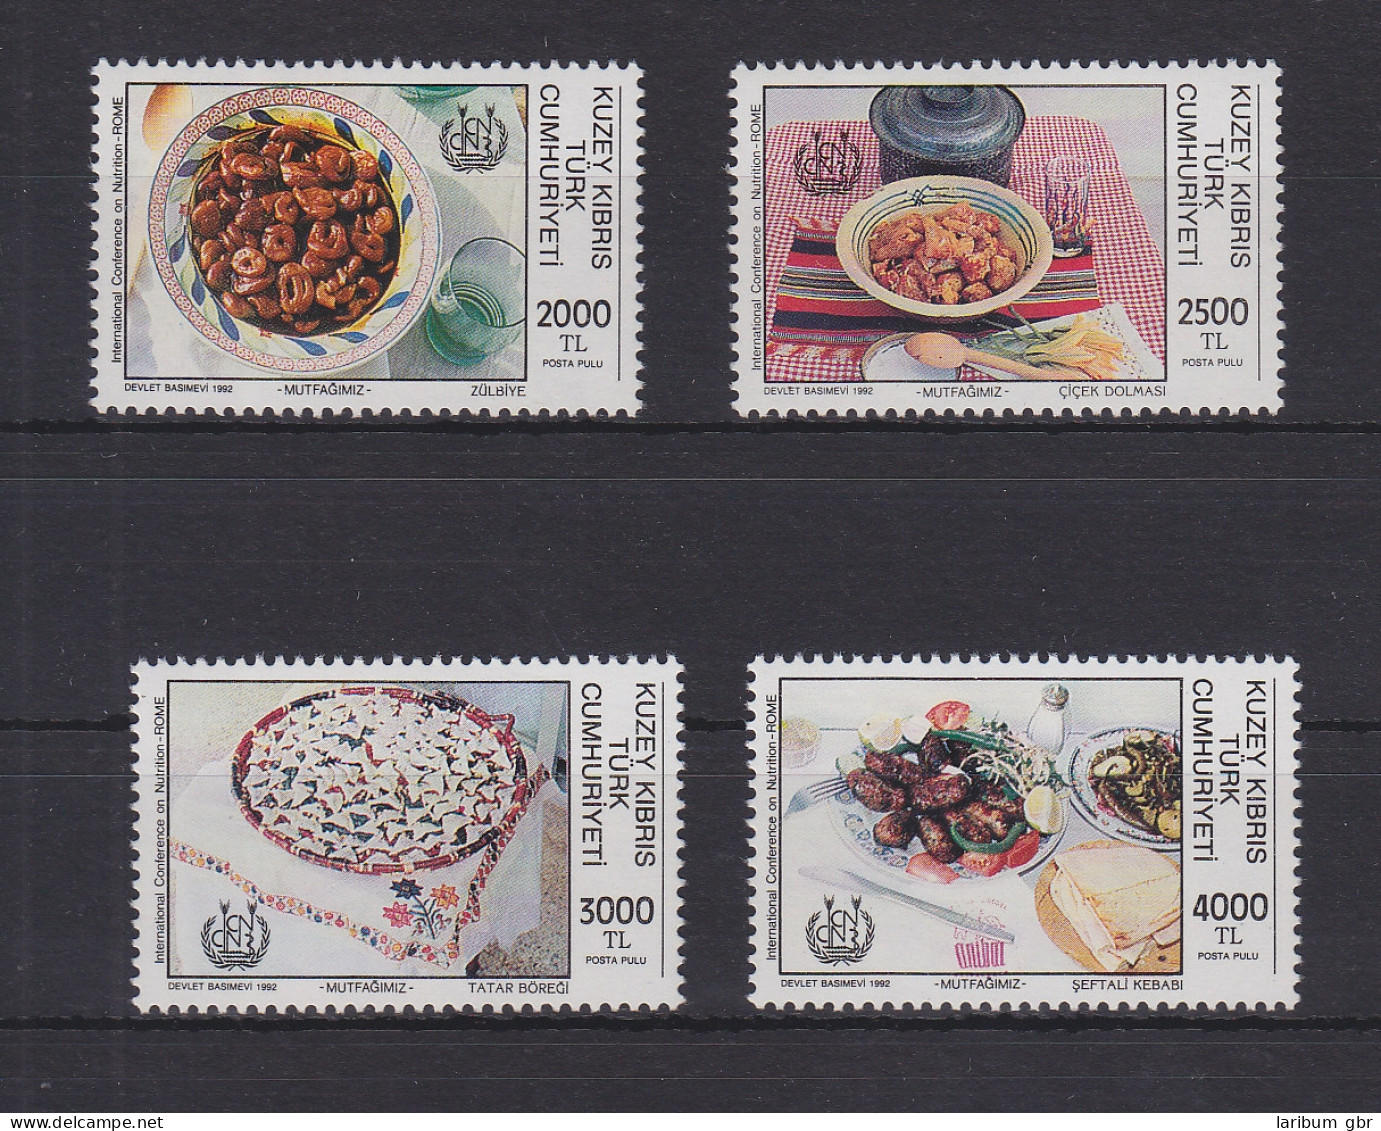 Türkisch-Zypern 347-350 Postfrisch Ernährung, Cyprus MNH #GE111 - Gebruikt